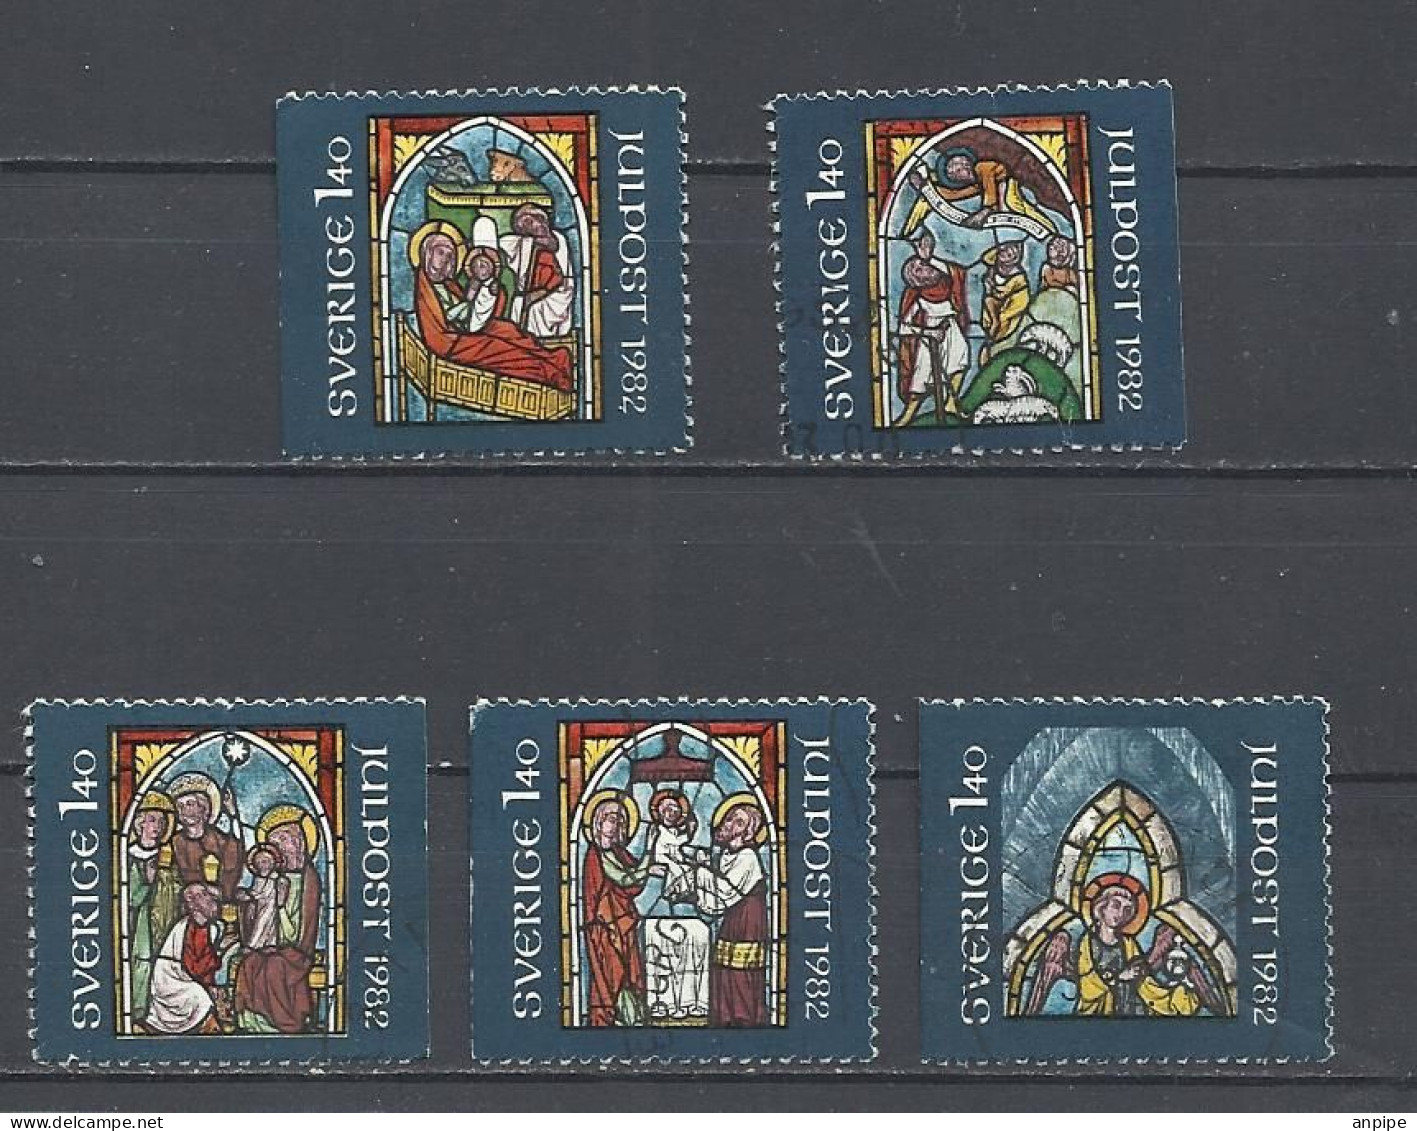 SUECIA, 1982 - Unused Stamps